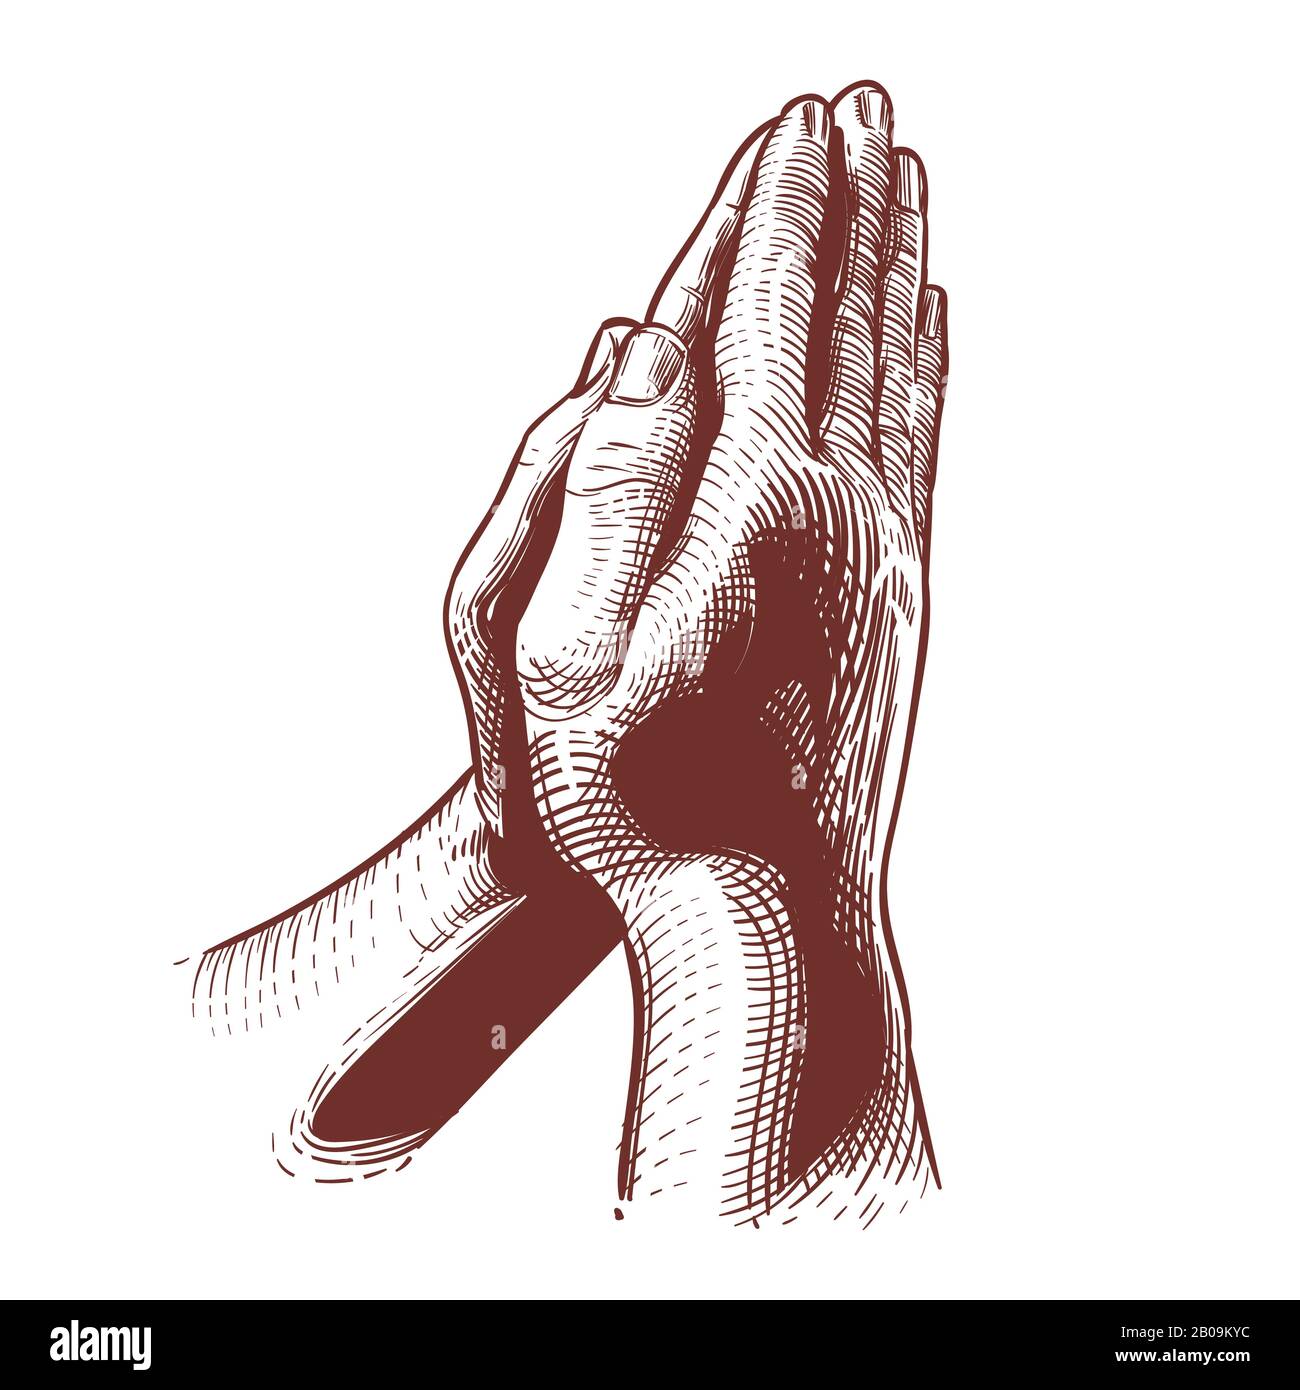 Pregare le mani, la preghiera sulla bibbia, le mani benedicenti illustrazione vettoriale disegnata a mano religiosa. Mani simboliche unite per pregare dio Illustrazione Vettoriale